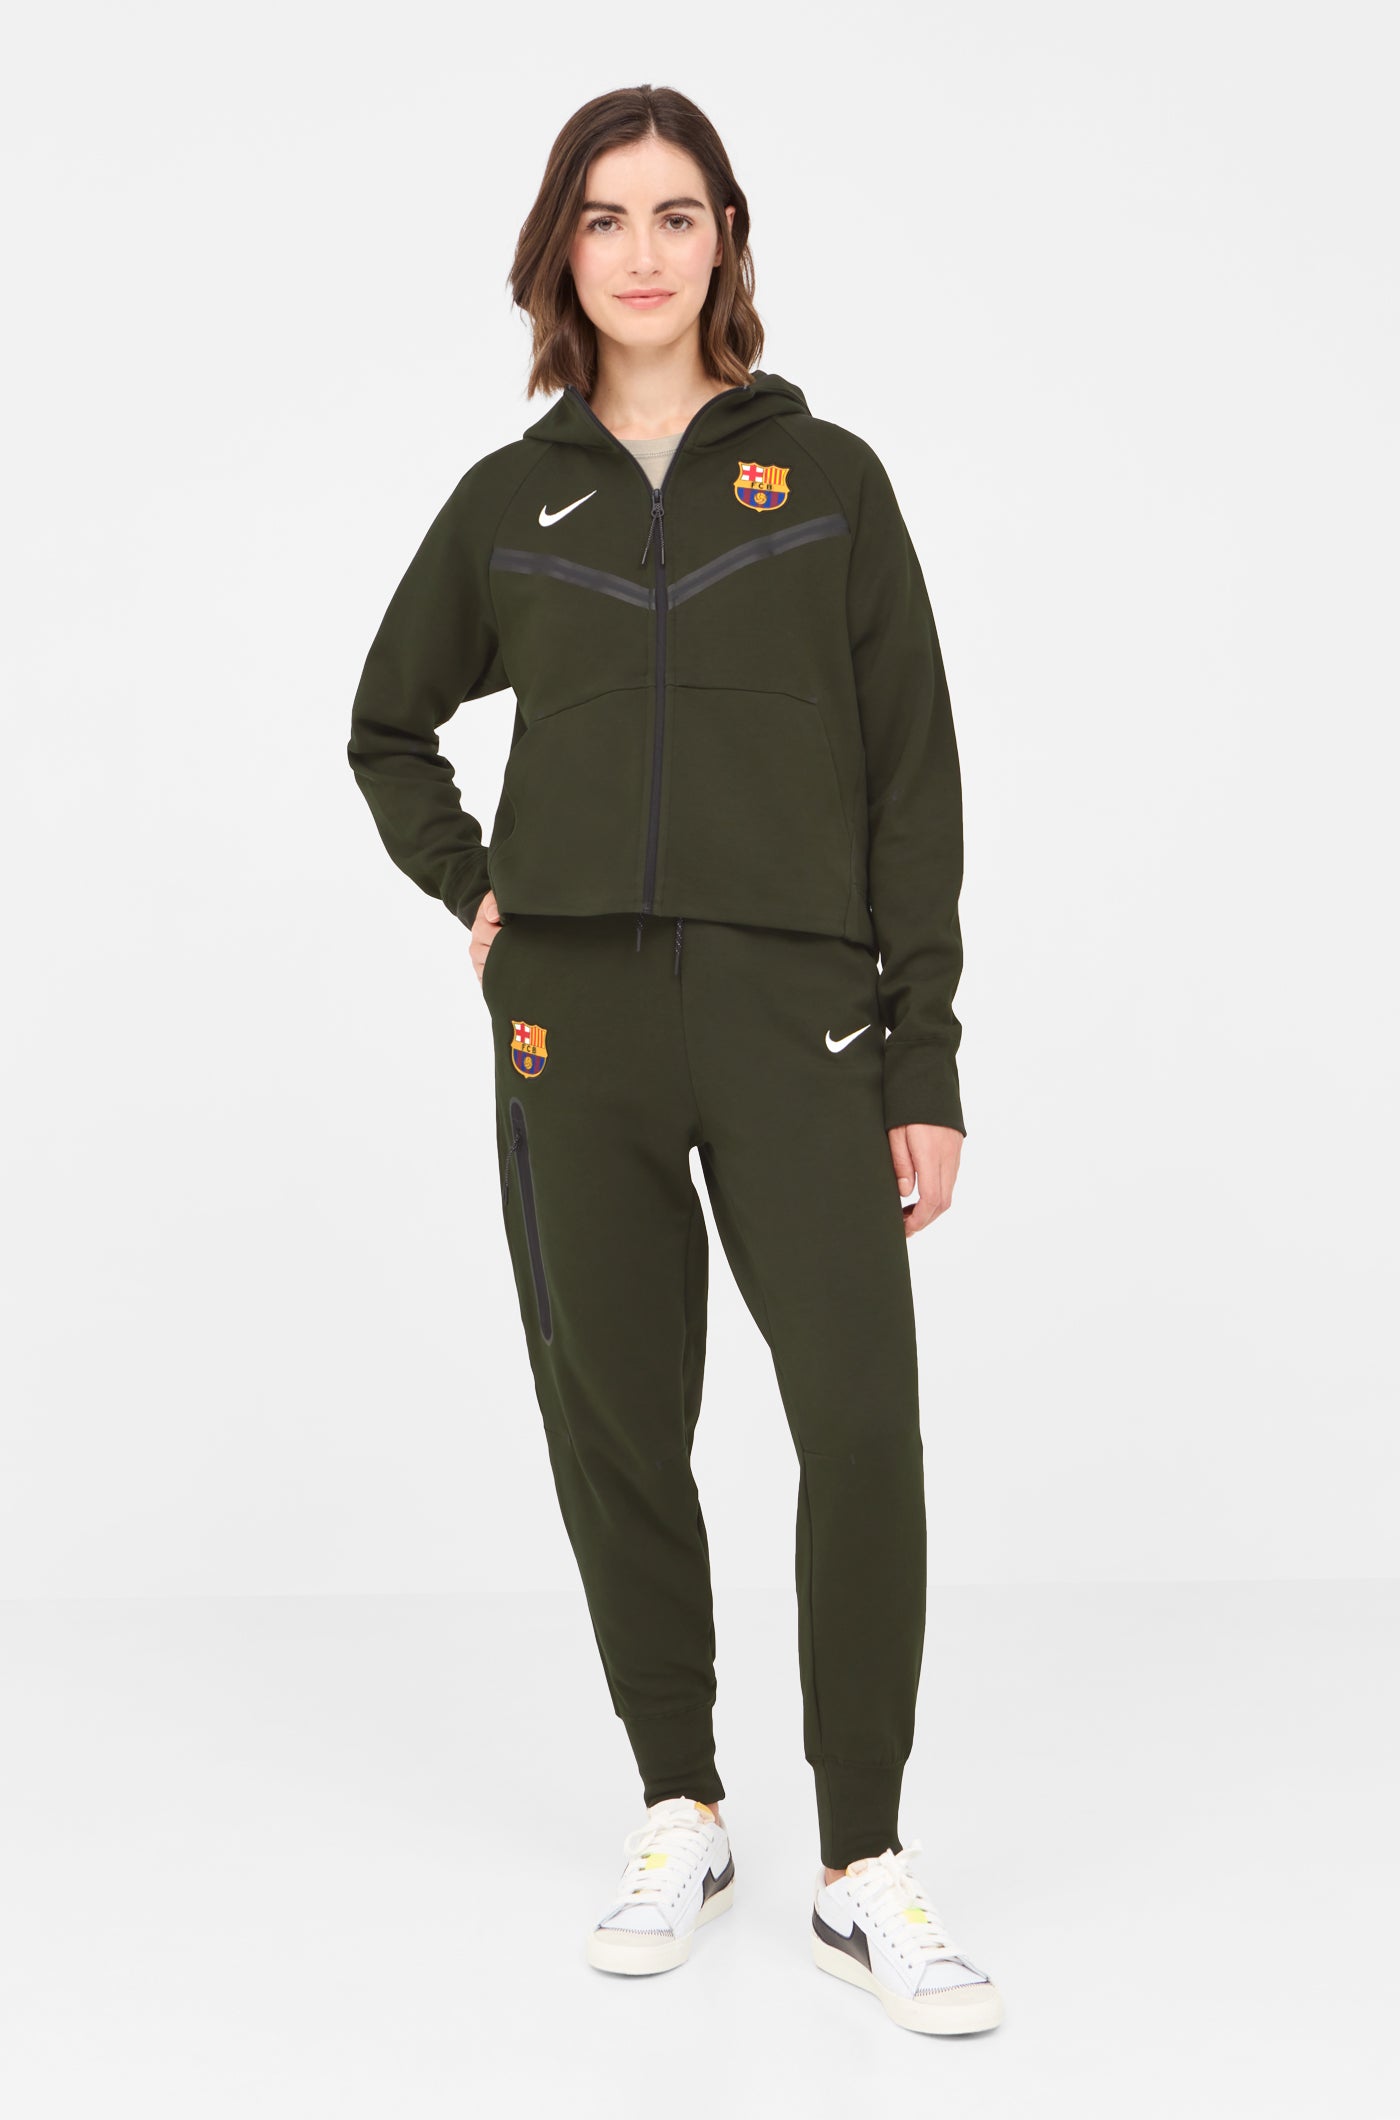 Tech Barça Nike Jacket - Women